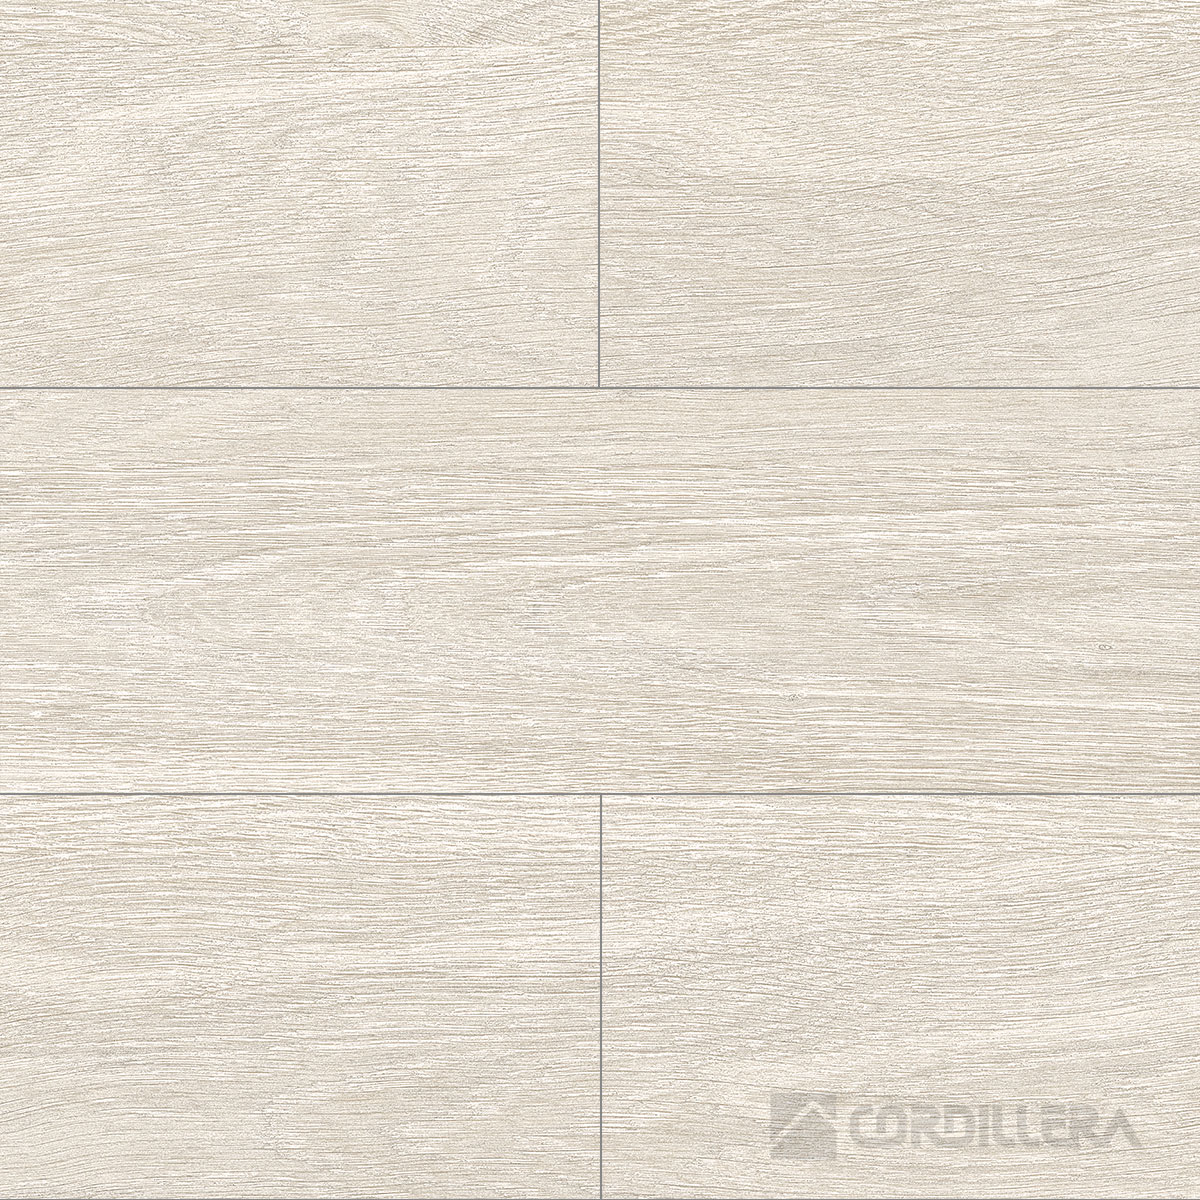 Cordillera - Inwood Blanco - 20x60